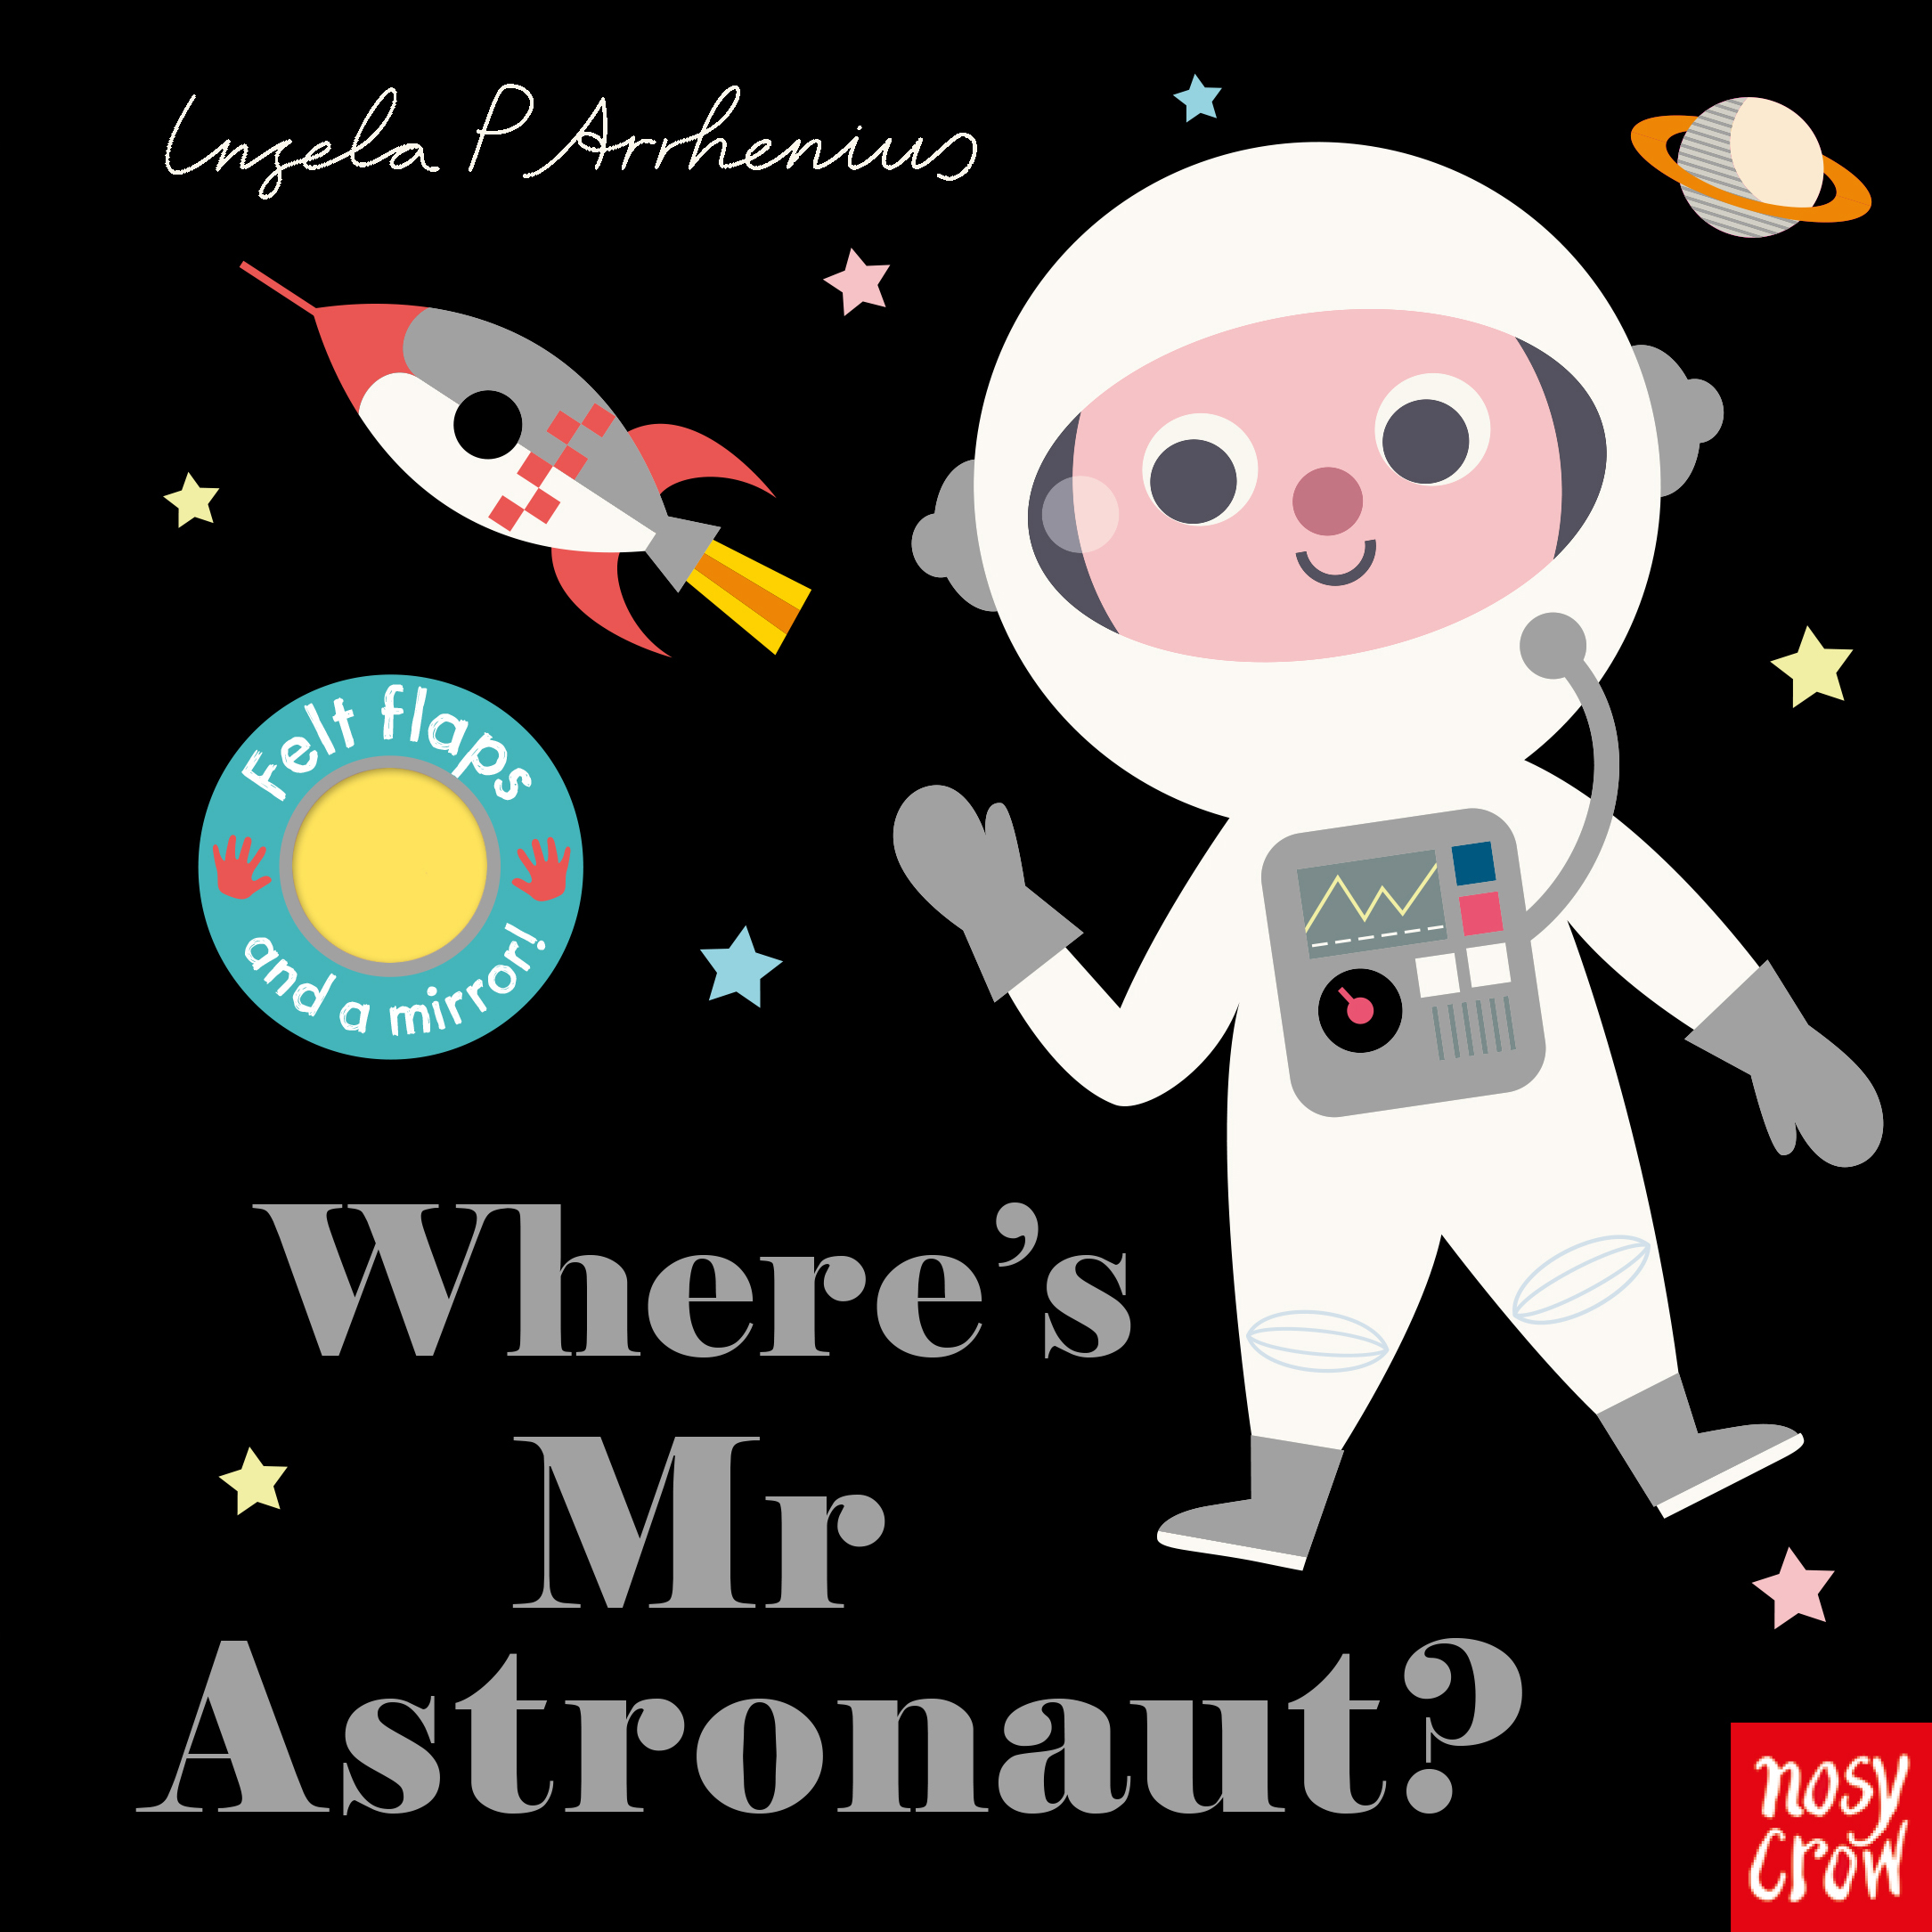 Wheres-Mr-Astronaut-498898-1.jpg